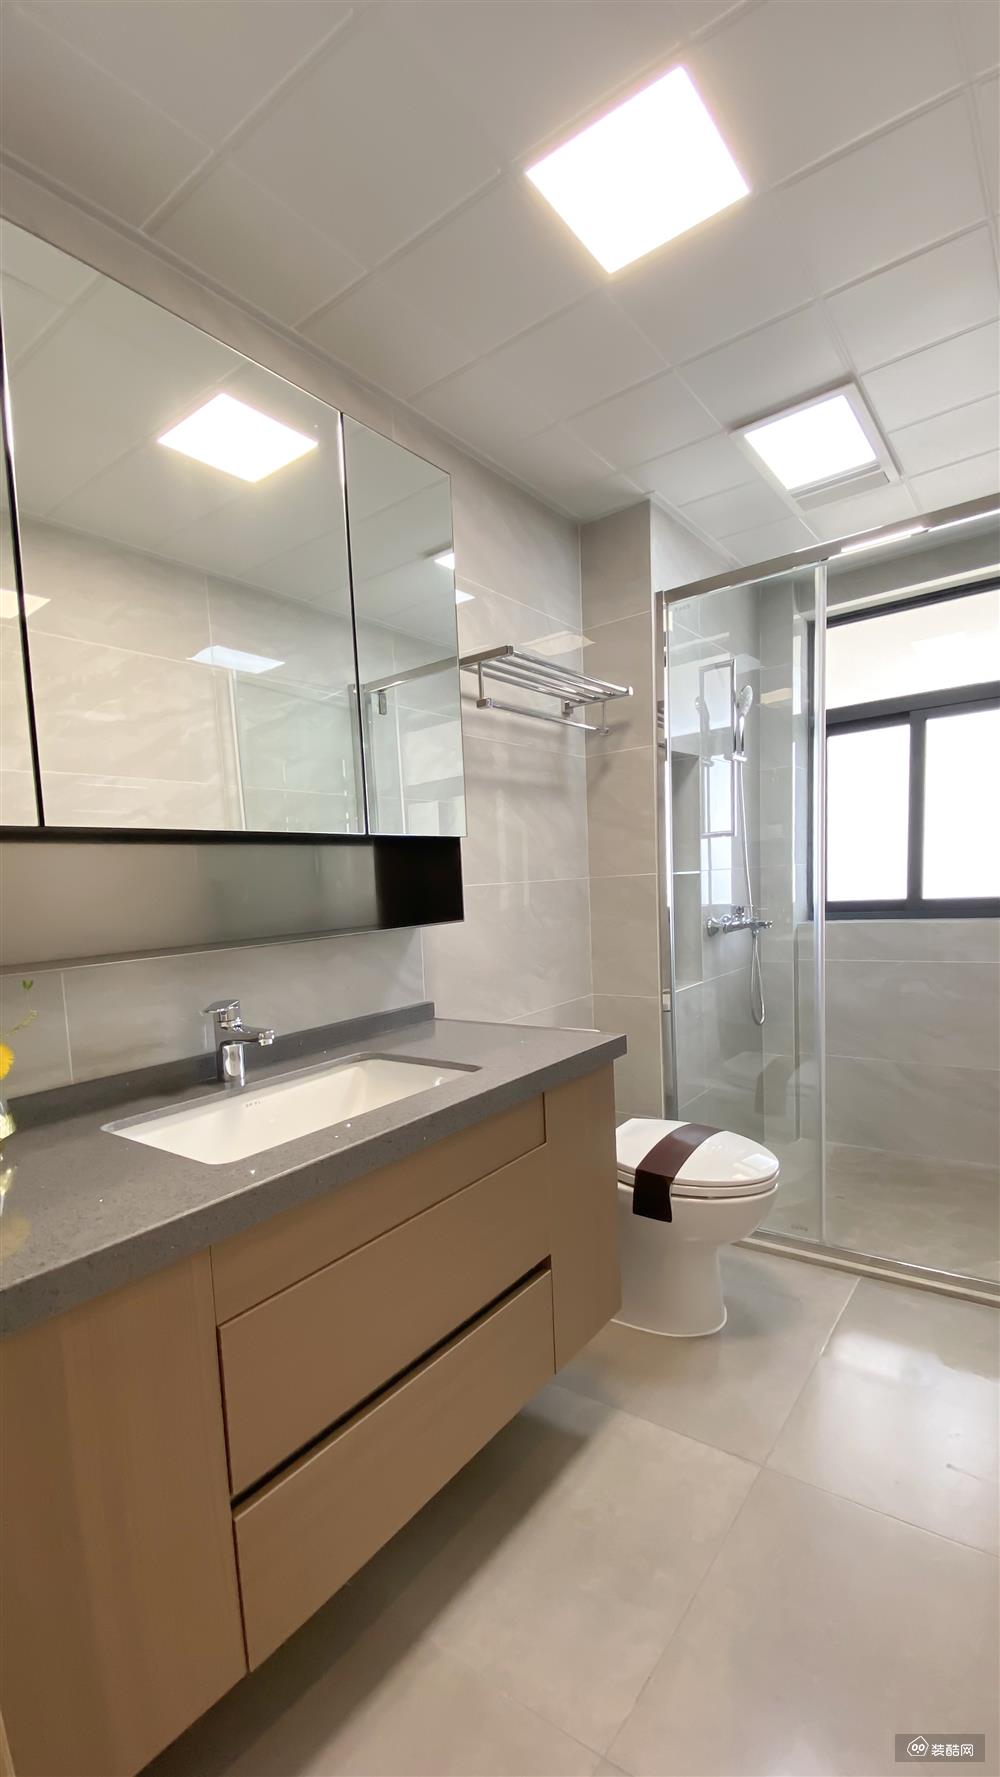 两个卫生间布局基本一致，一子排开的设计显得空间不那么的拘束，设计起来也更方便与合理。淋浴房也做了基本的干湿分离和壁龛收纳。